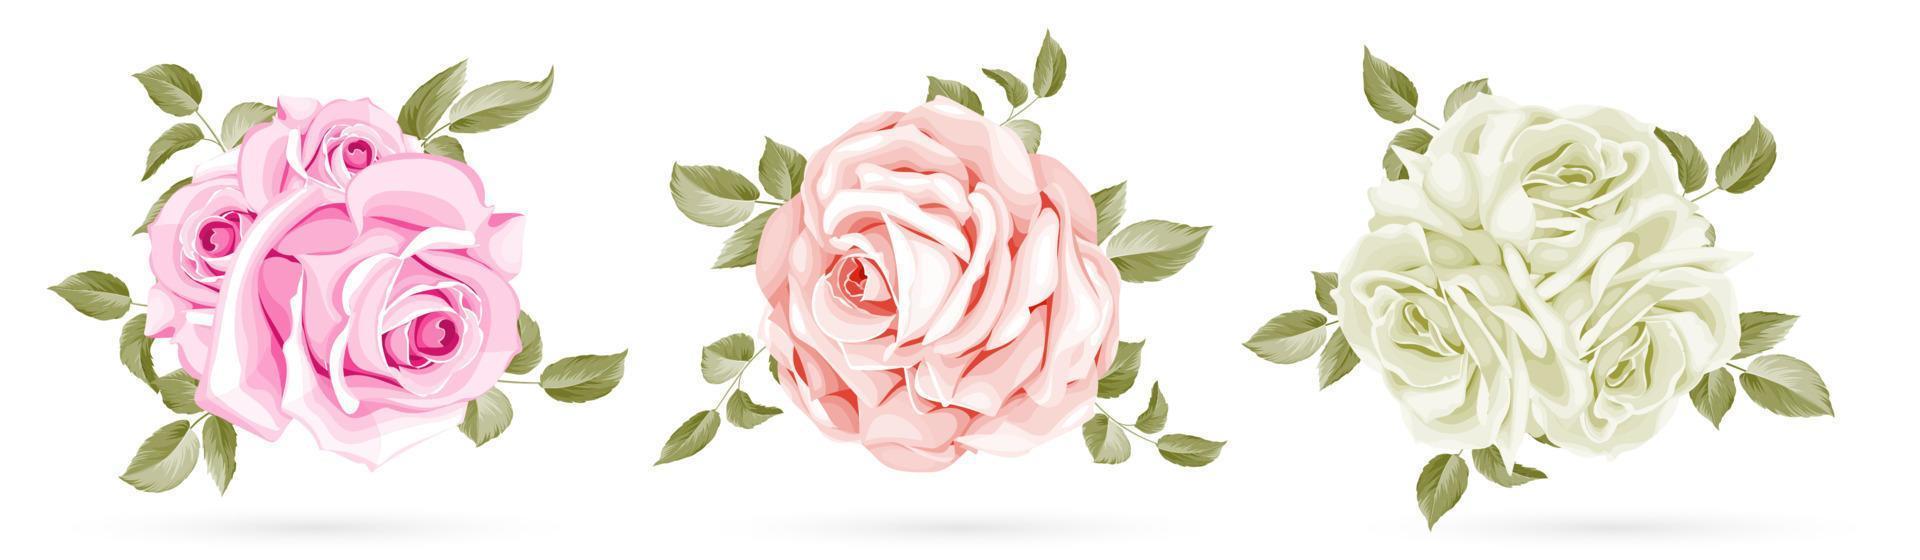 bouquet rose isolé sur fond blanc vecteur